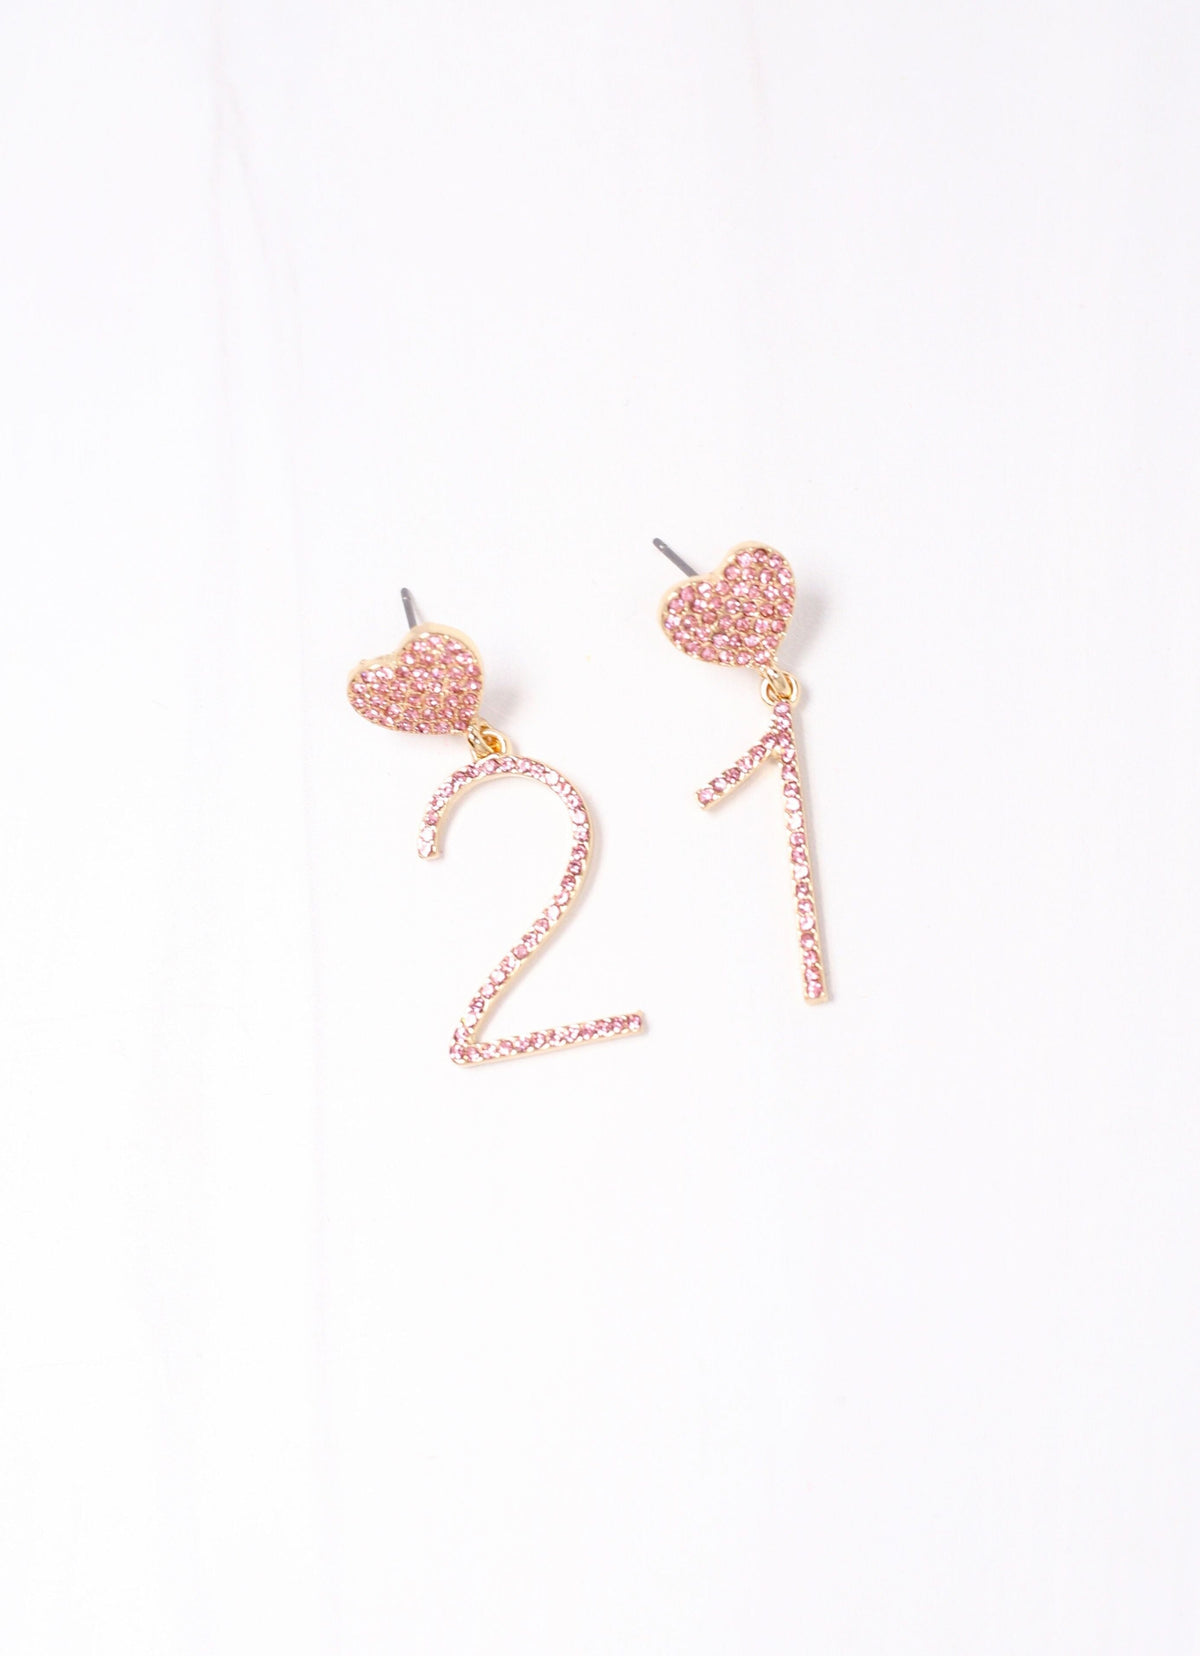 21 CZ Drop Earring PINK - Caroline Hill